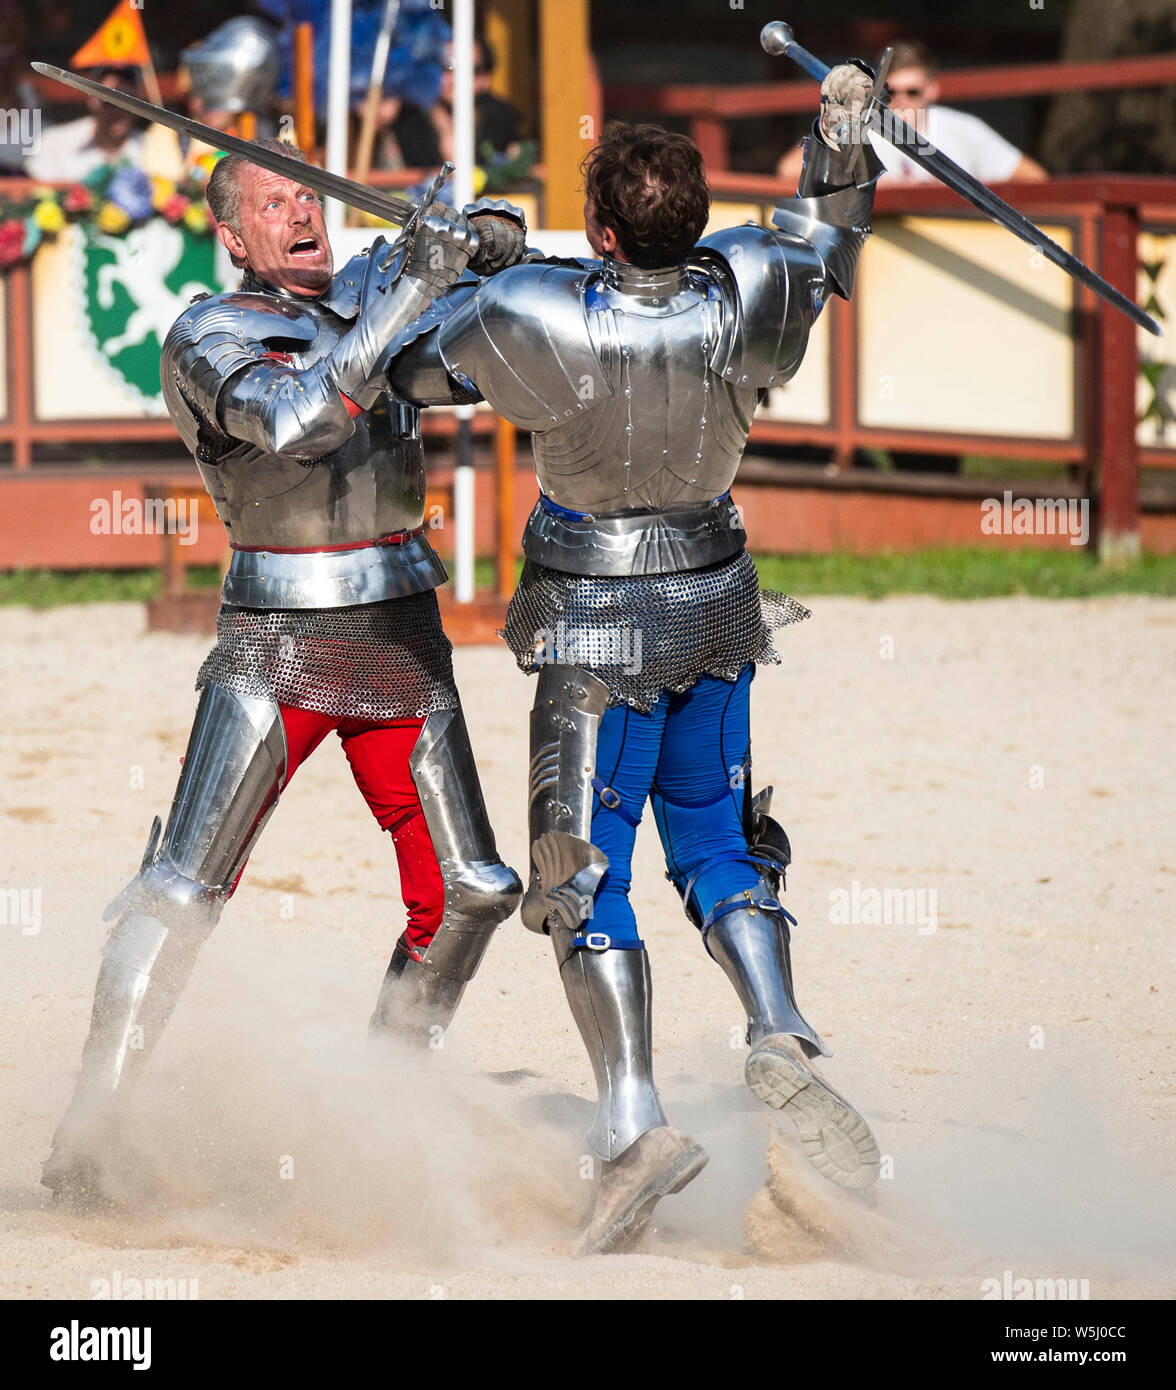 (190729) -- BRISTOL, 29 juillet 2019 (Xinhua) -- Deux chevaliers dans un combat à l'épée à la Renaissance Faire Bristol à Bristol, Wisconsin, États-Unis, le 28 juillet 2019. La Renaissance Faire plaisir ouvre les samedis et dimanches de juillet 6 à 2 septembre 2019. (Photo par Joel Lerner/Xinhua) Banque D'Images